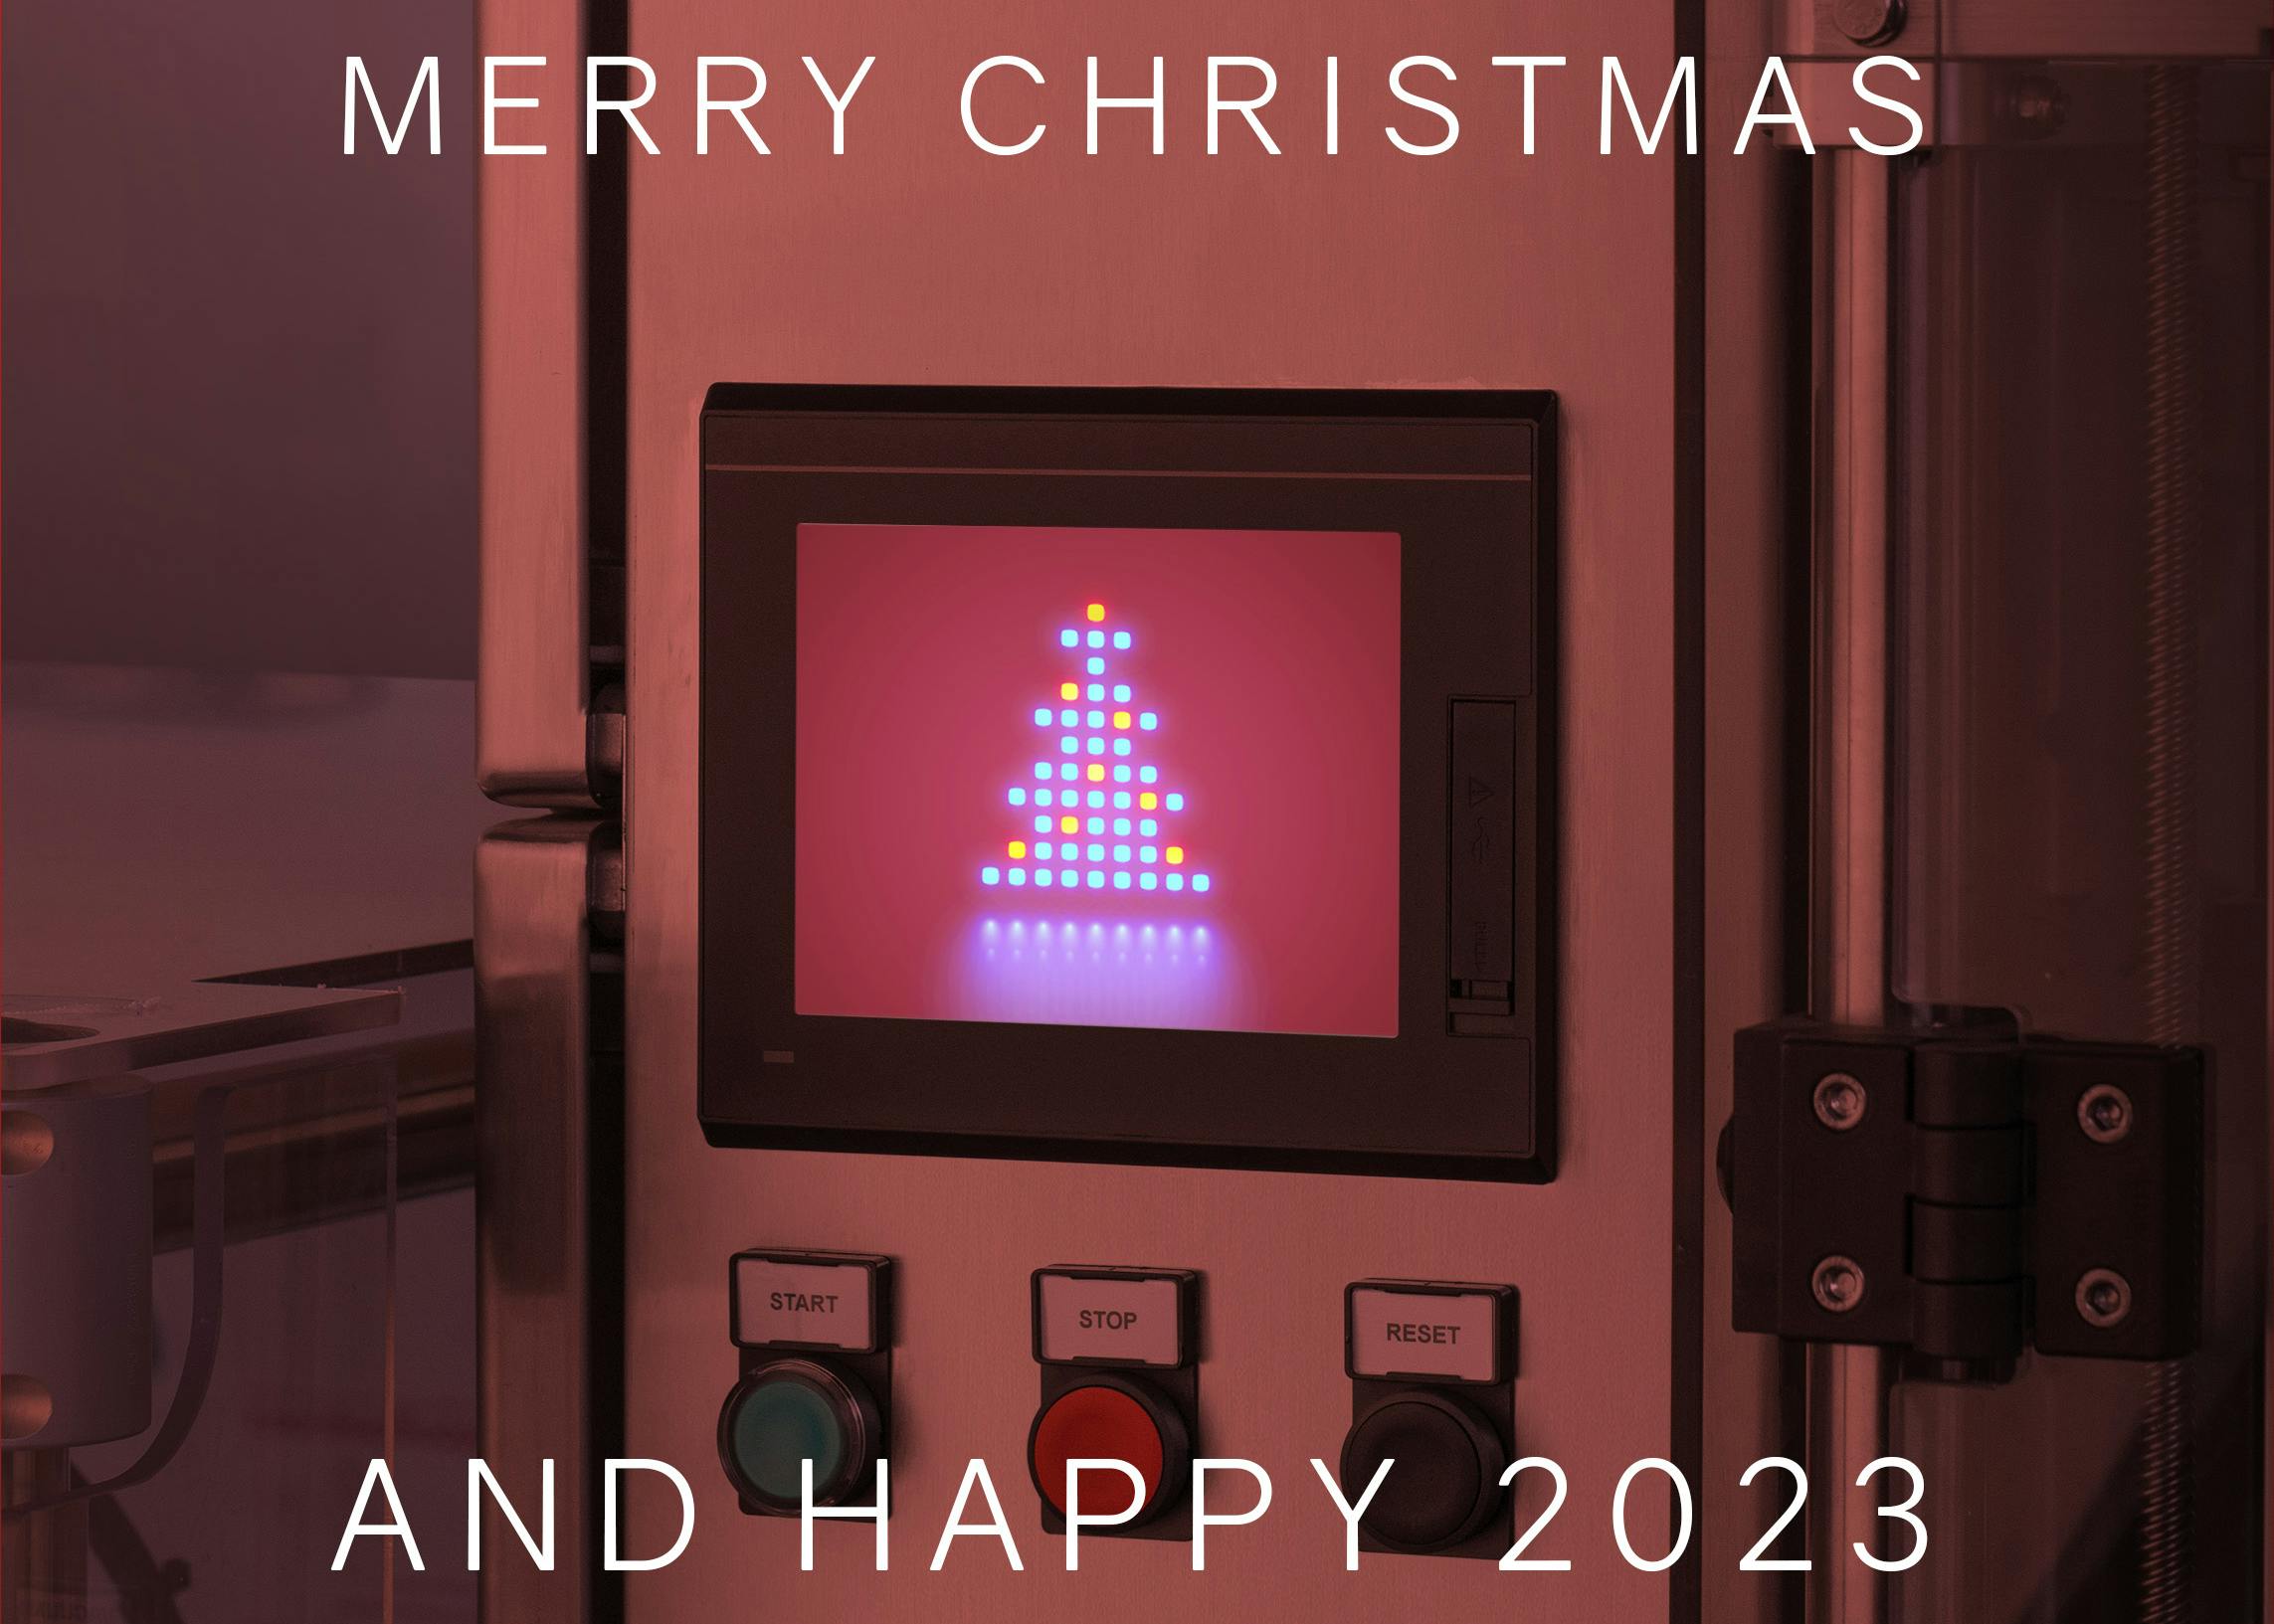 La macchina di Quinti si veste a festa per augurare Merry Crhistmas and Happy 2023, un albero luminoso campeggia sul monitor e una luce di colore rosso illumina tutto a festa.